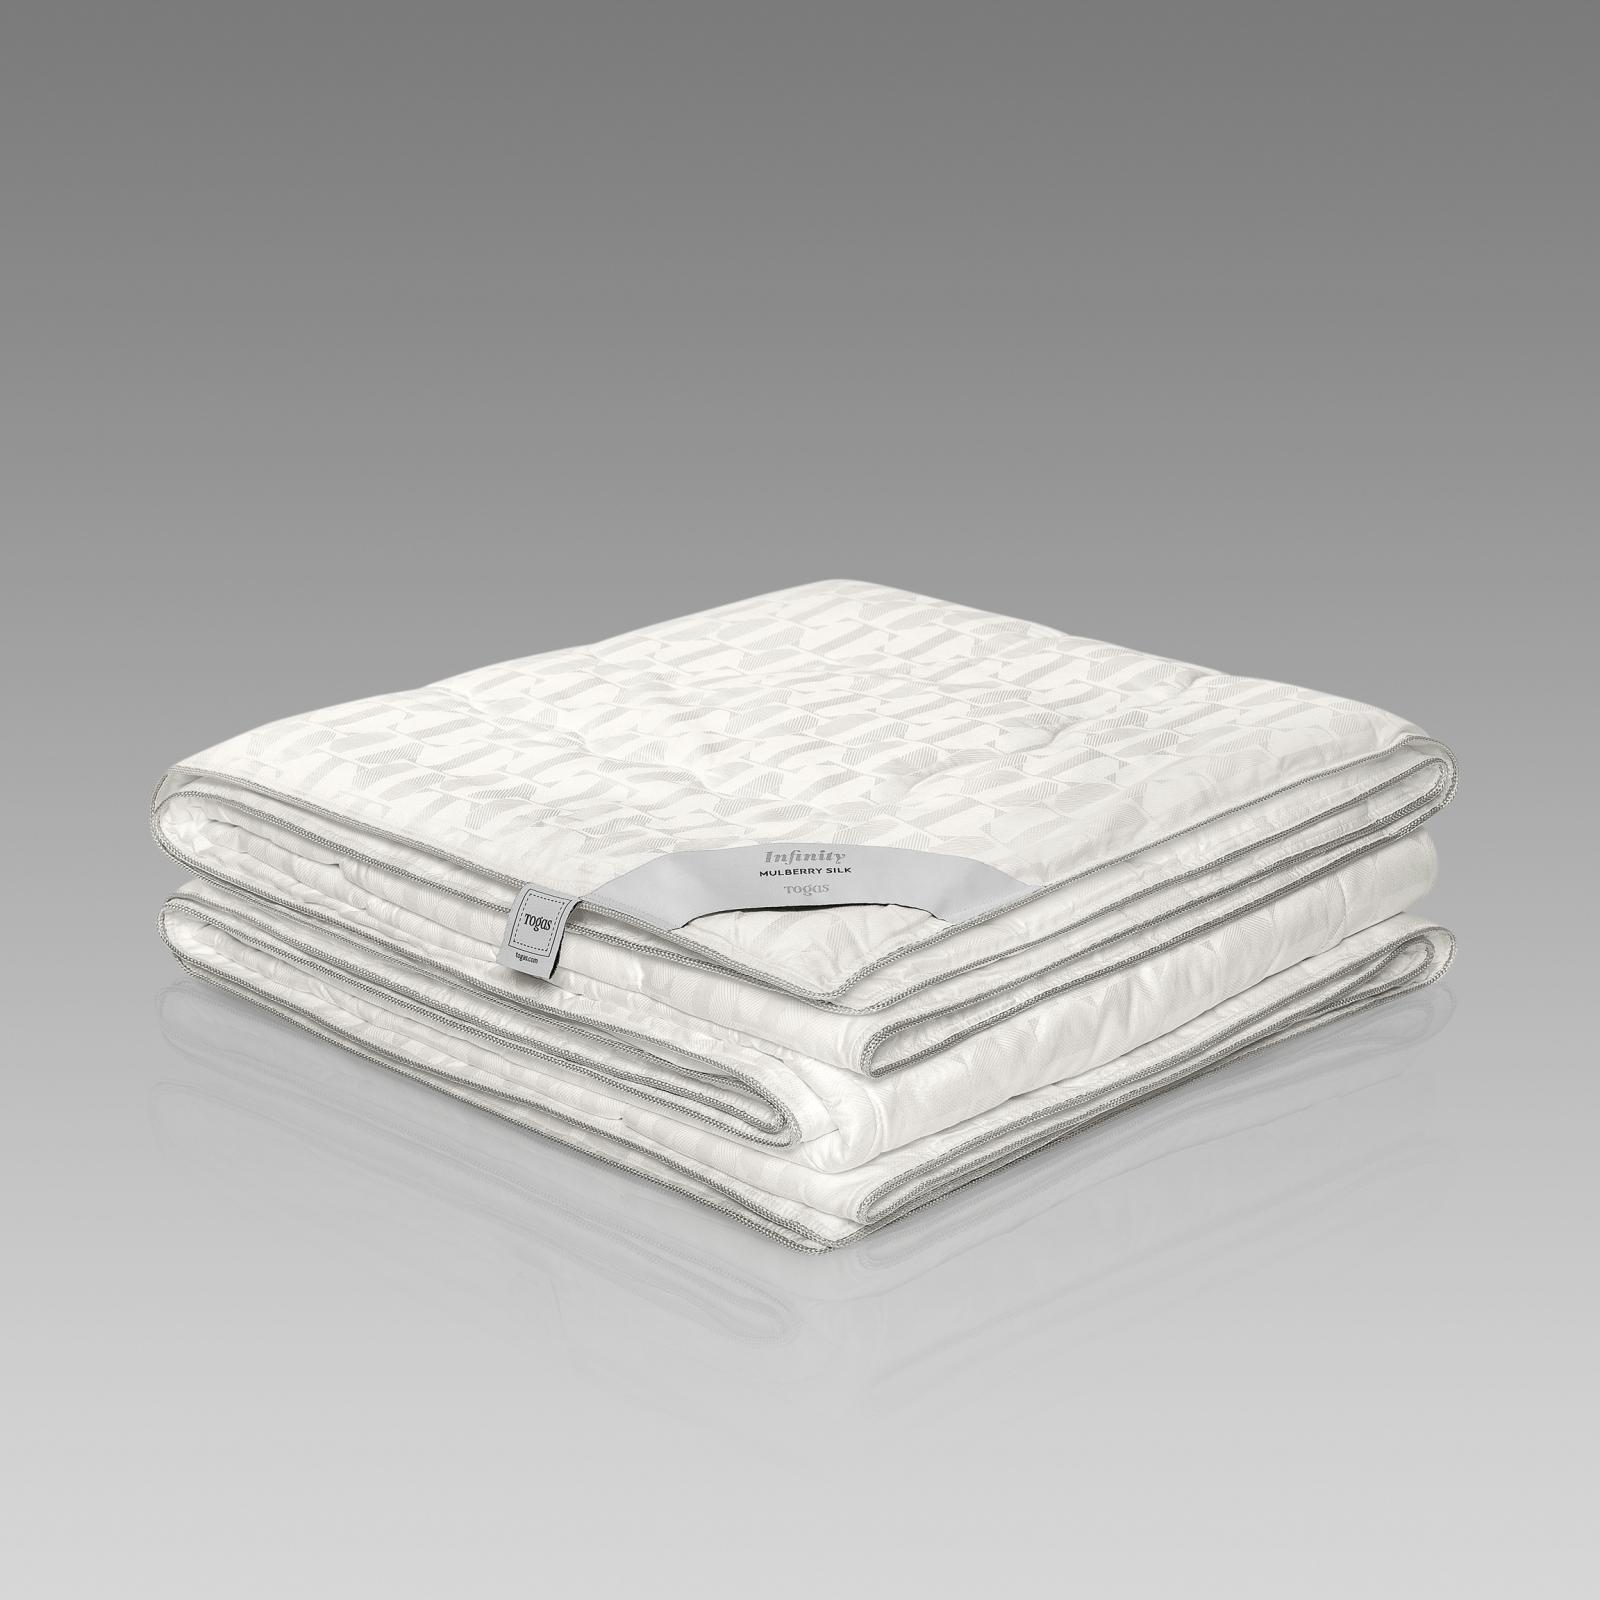 Одеяло Togas Инфинити 140х200 см (20.04.16.0113) одеяло togas лира белое 140х200 см 20 04 17 0091